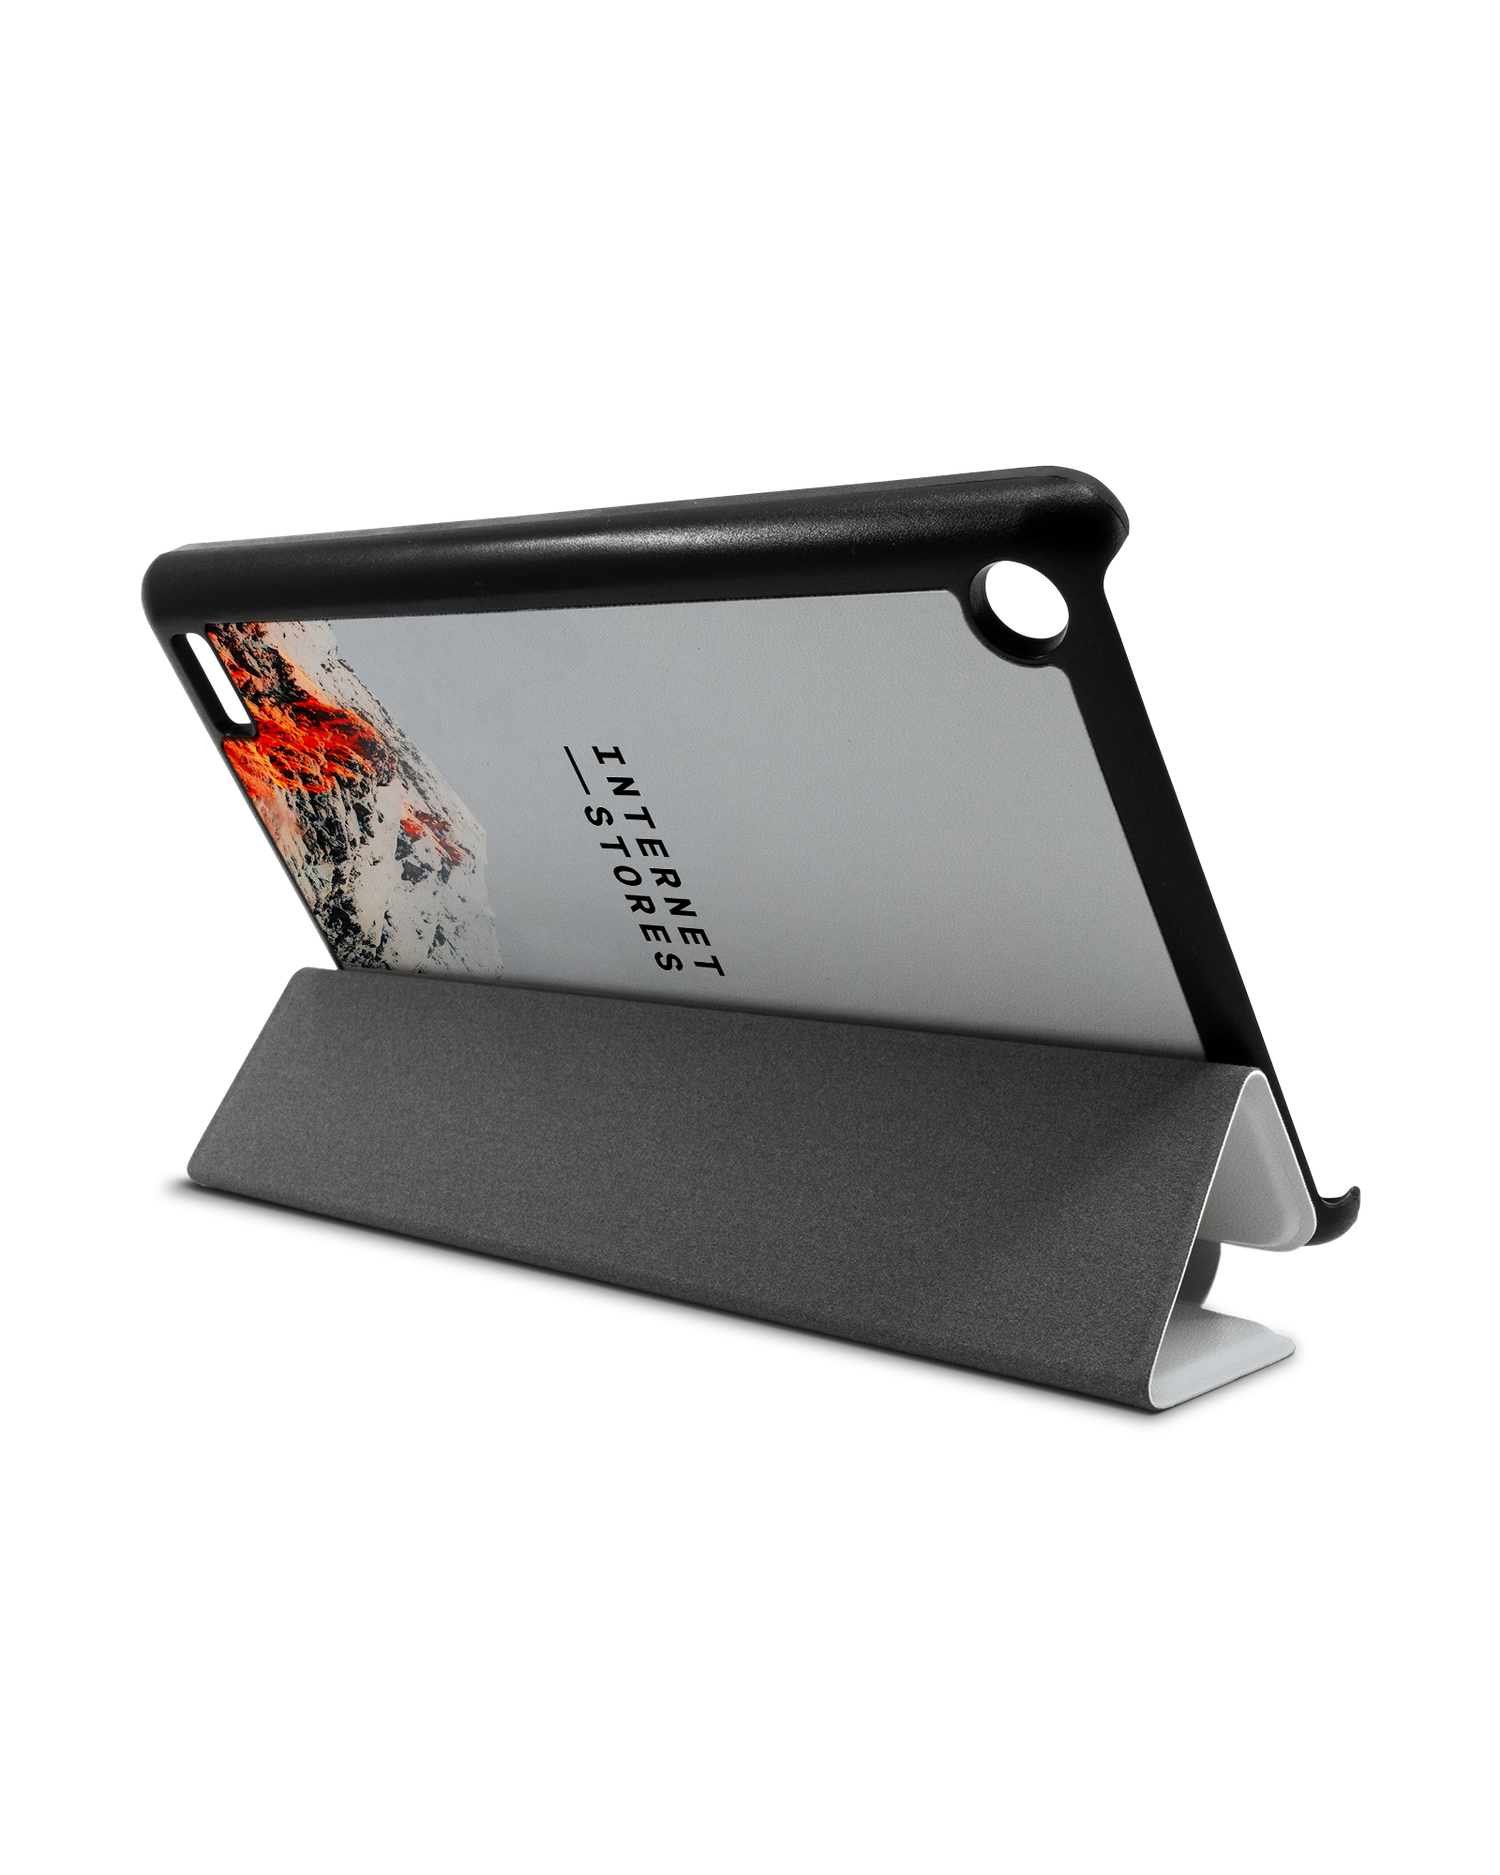 High Peak Tablet Smart Case für Amazon Fire 7: Aufgestellt im Querformat